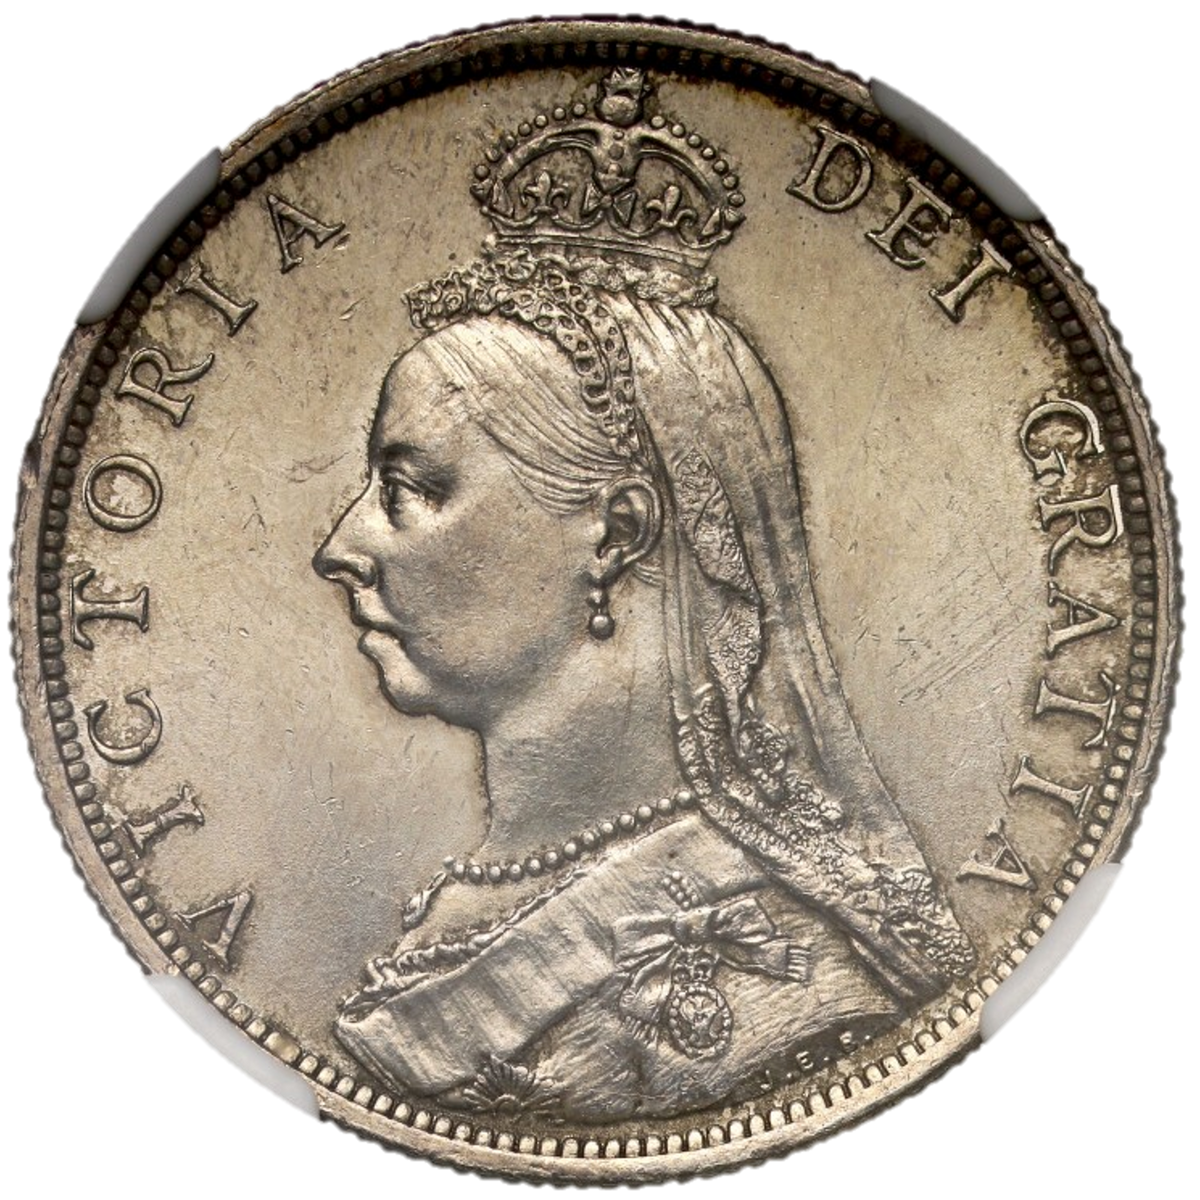 1887 ヴィクトリア女王 フローリン イギリス銀貨 オンラインショップ